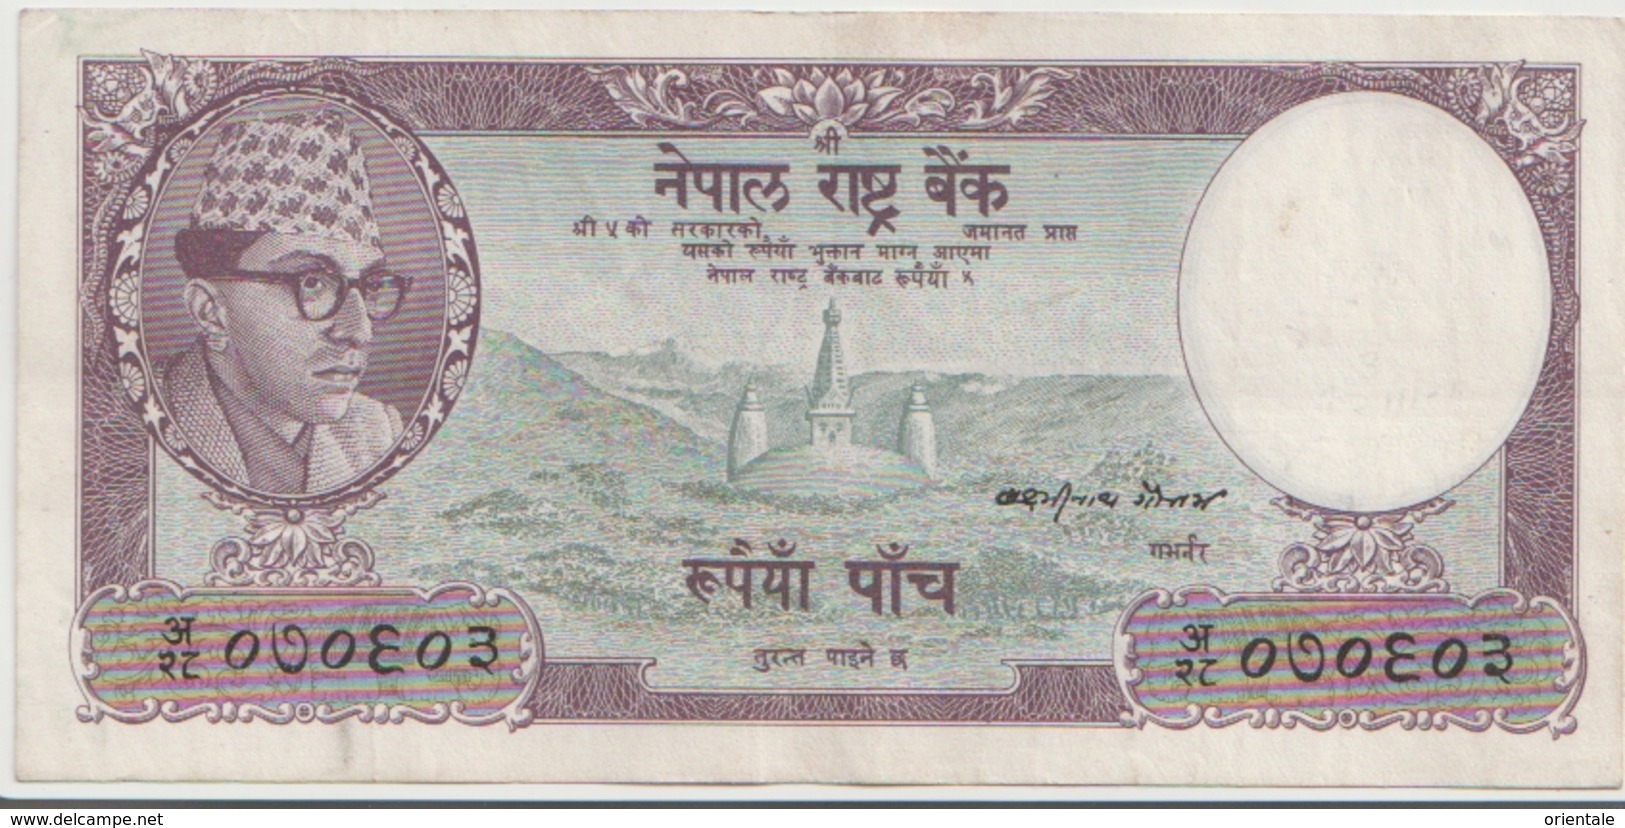 NEPAL P. 13 5 R 1961 VF (s. 5) - Nepal